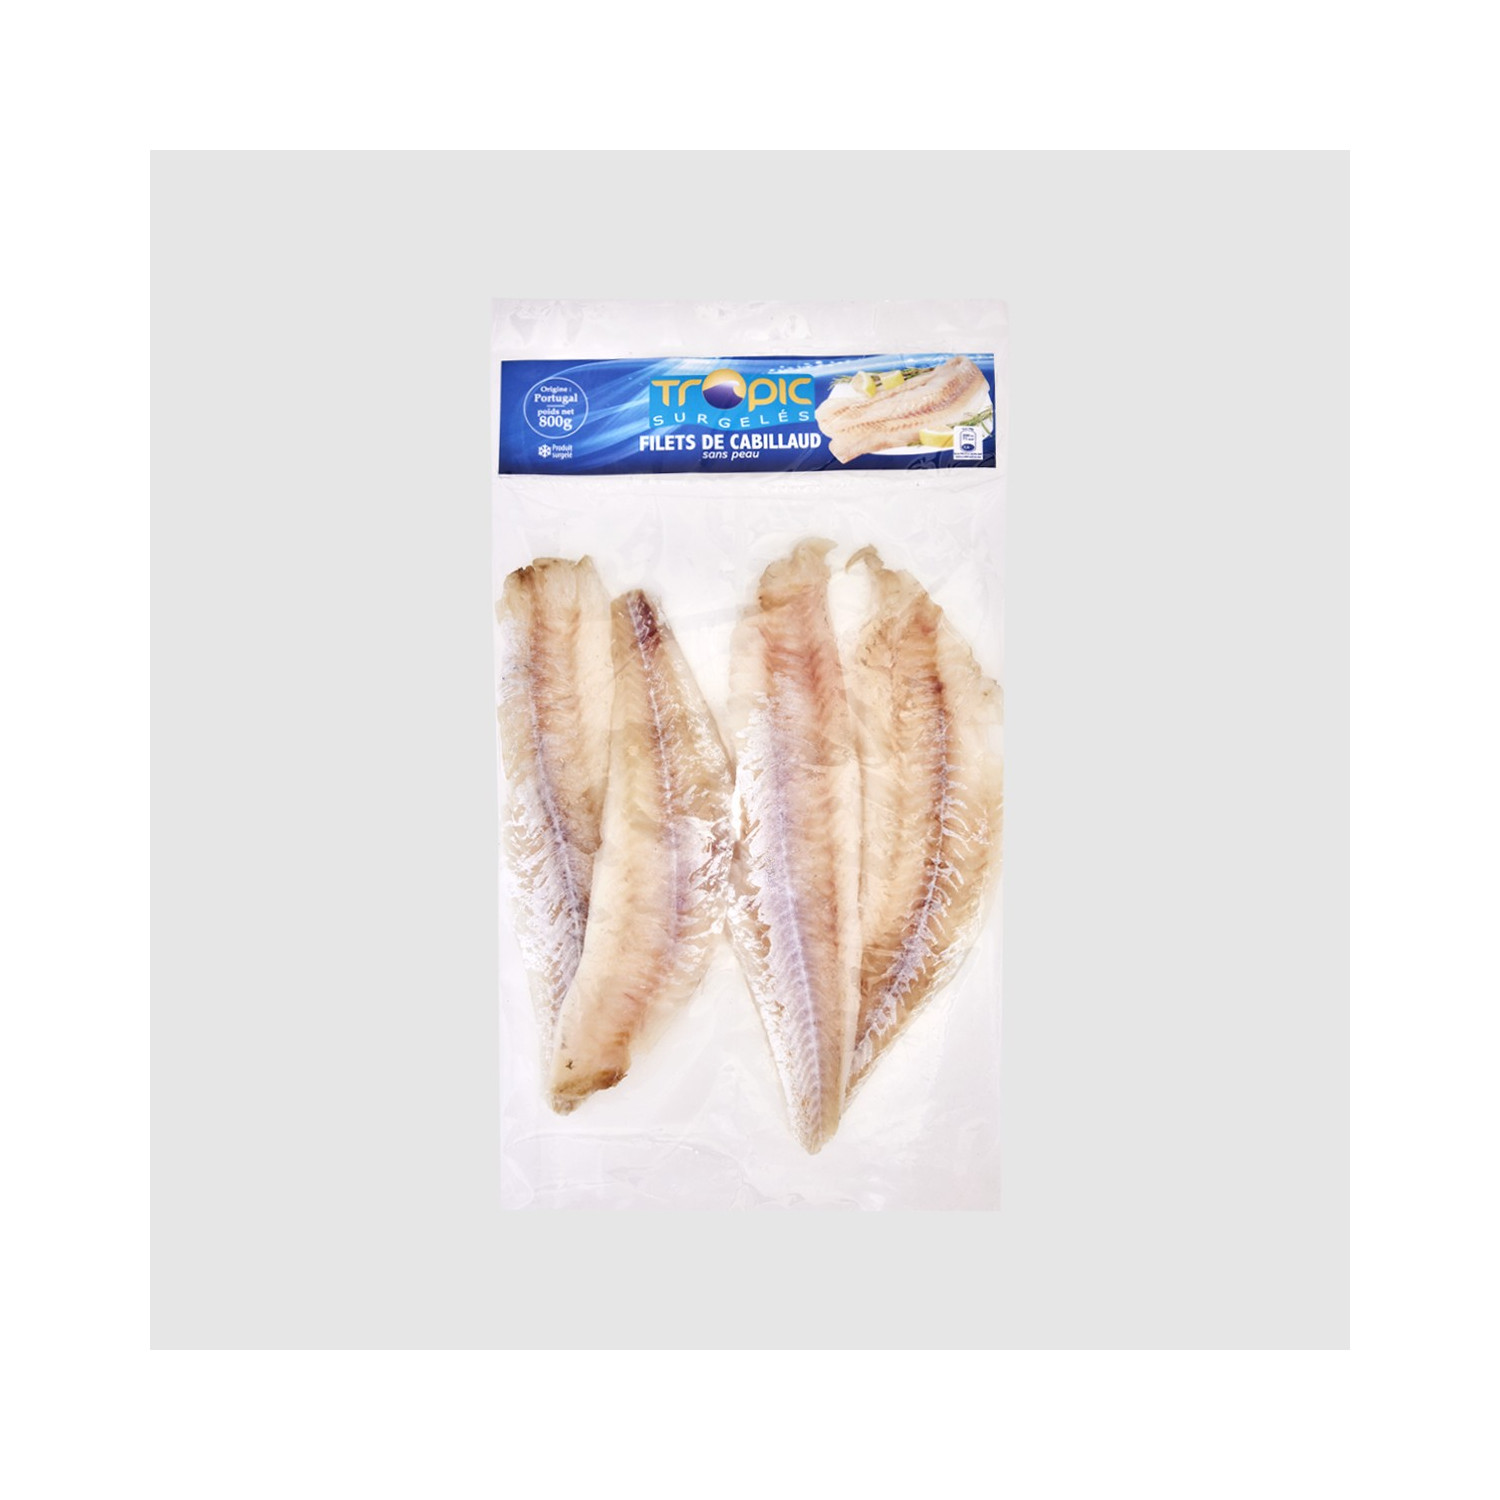 Filetes de bacalao sin piel congelados